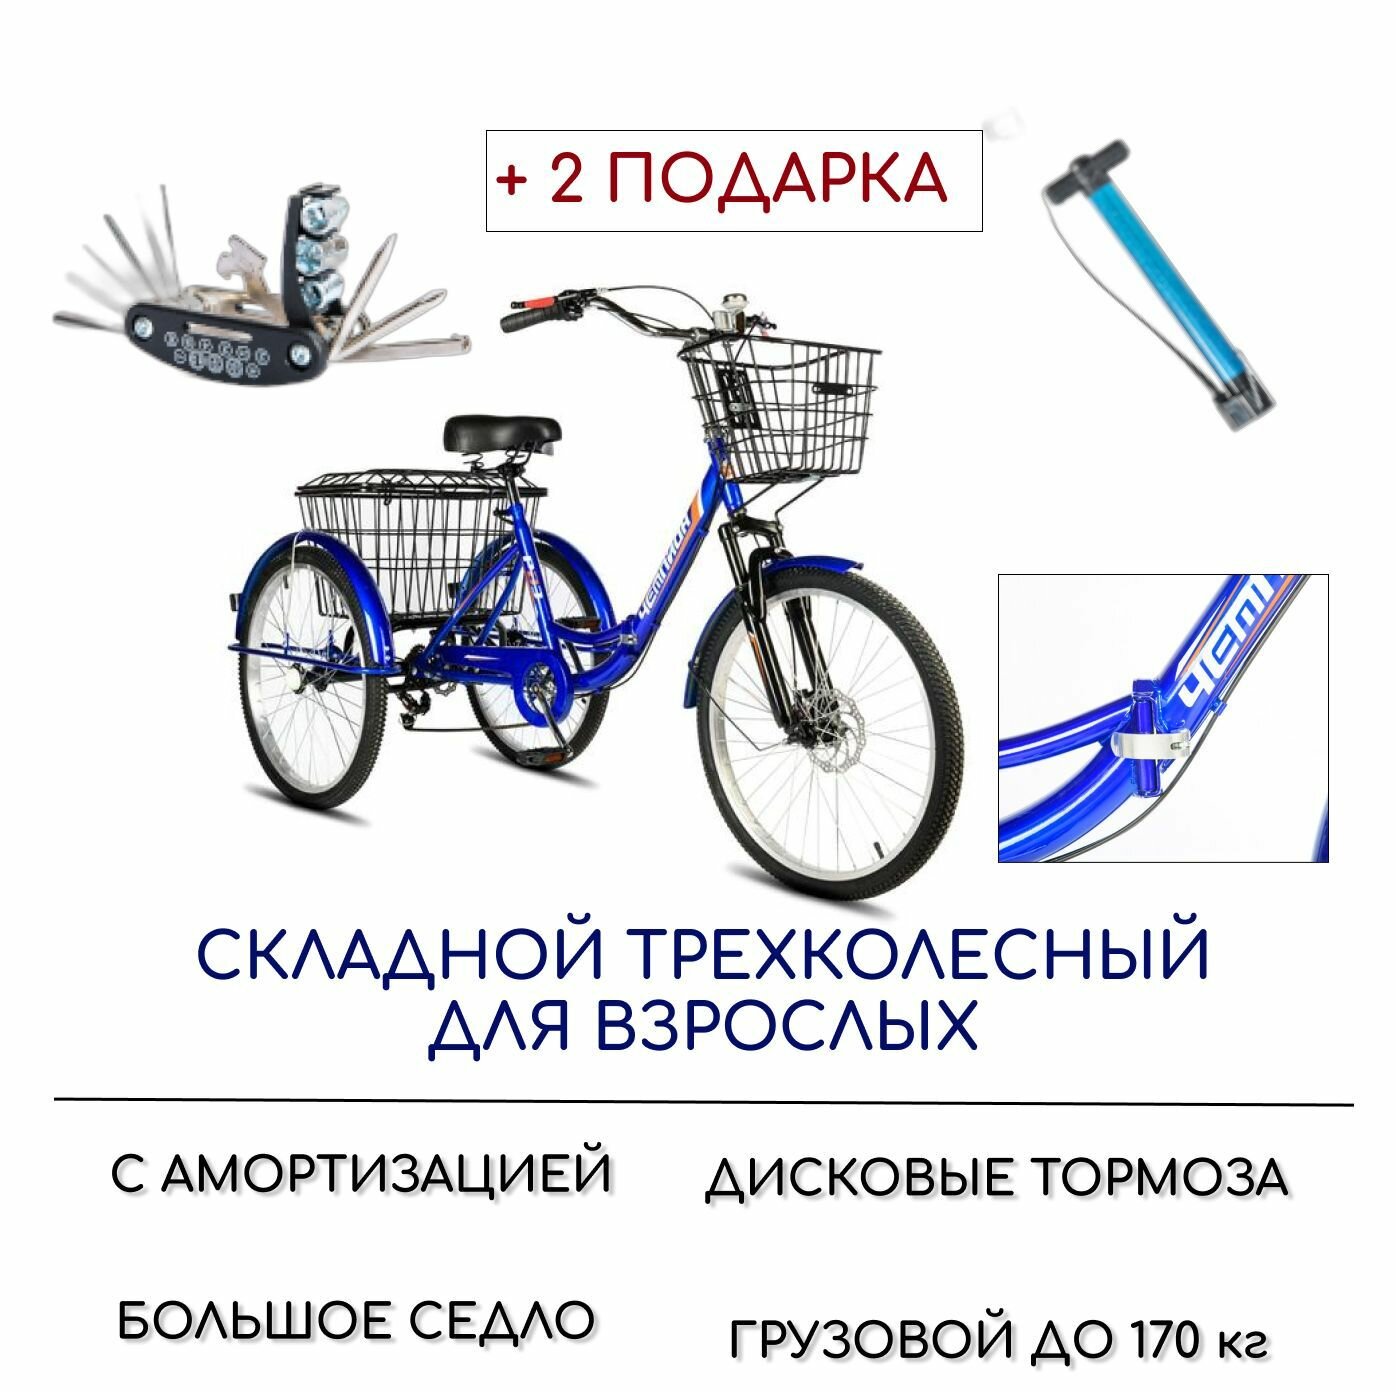 Трехколесный велосипед для взрослых РВЗ "Чемпион" (складной), 24", насос и набор ключей в комплекте, синий